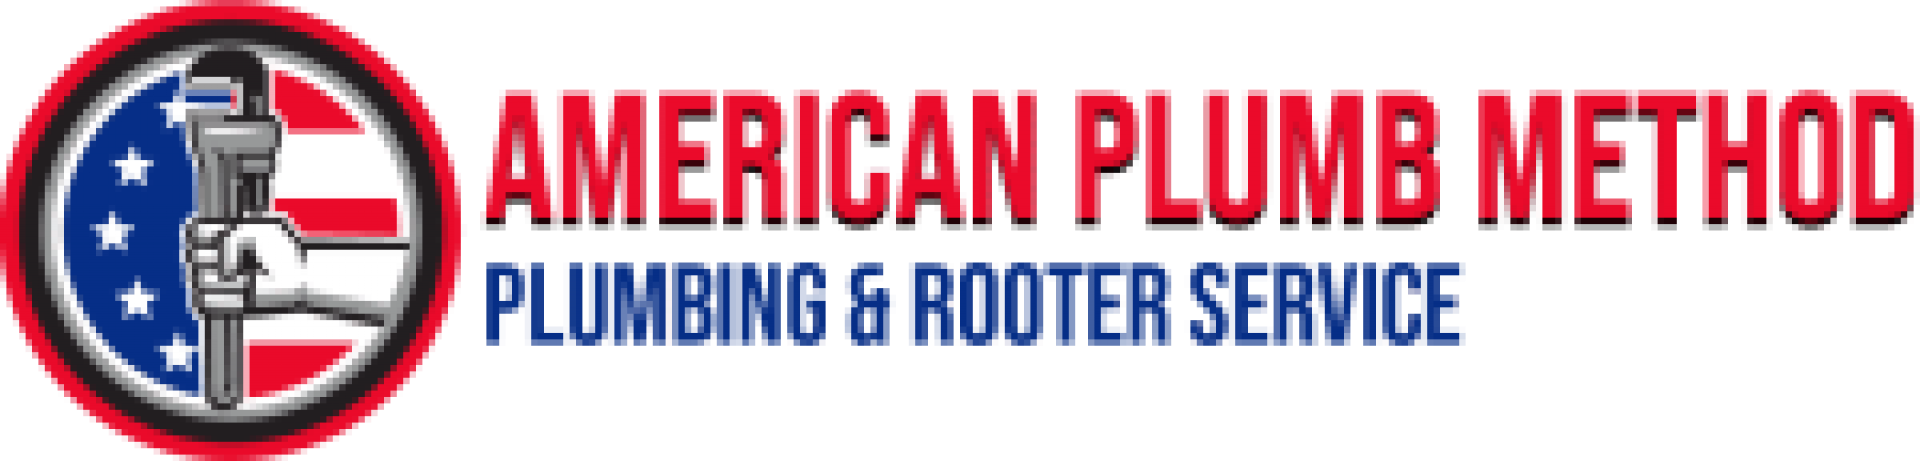 American Plumb Method Plumbing & Rooter company logo